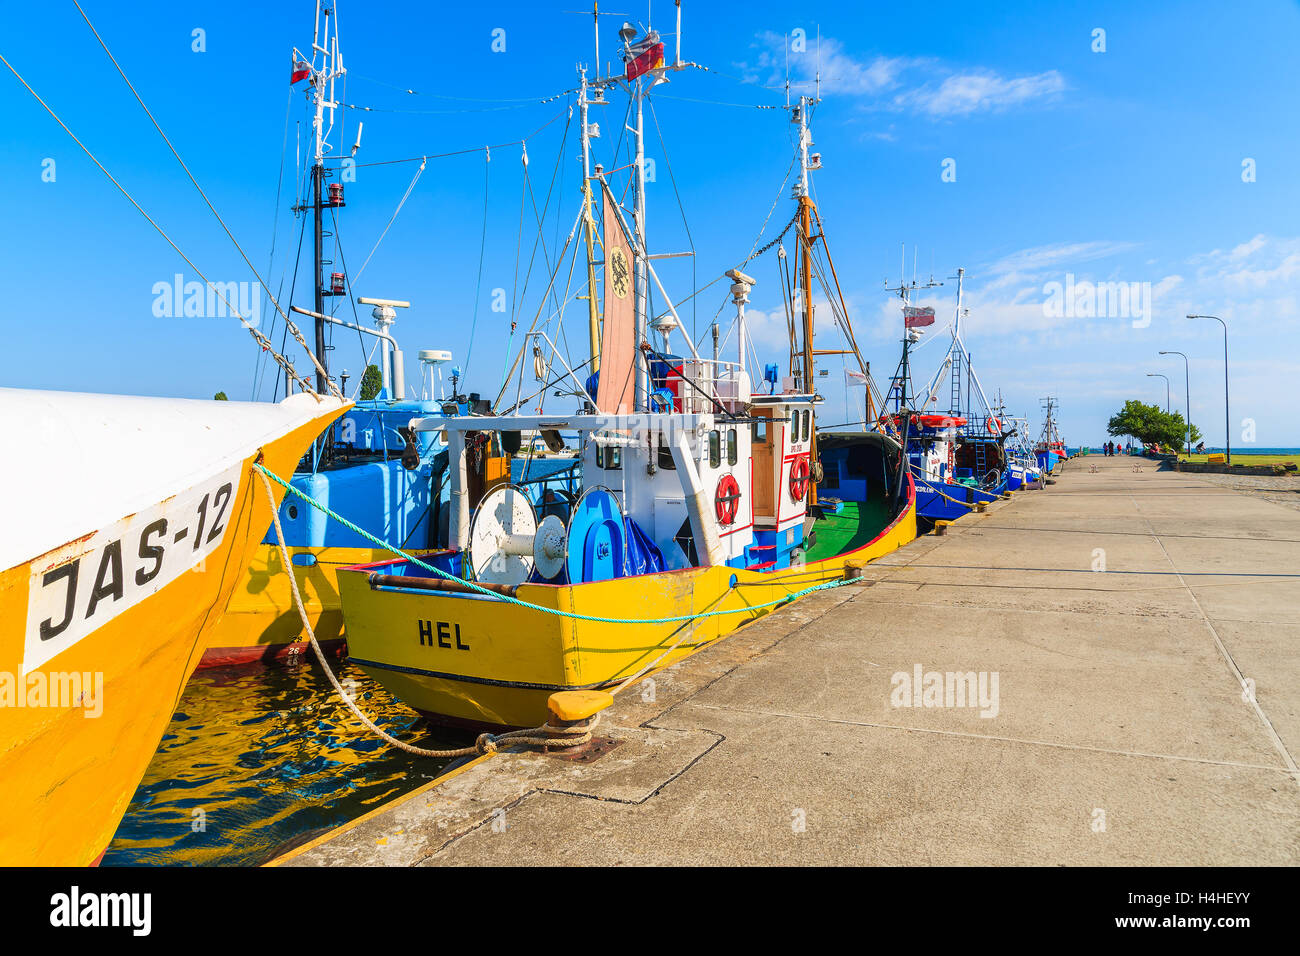 Porta JASTARNIA, Polonia - giu 21, 2016: barche da pesca in Jastarnia porta sulla penisola di Hel, Mar Baltico, Polonia. La pesca è così importante Foto Stock